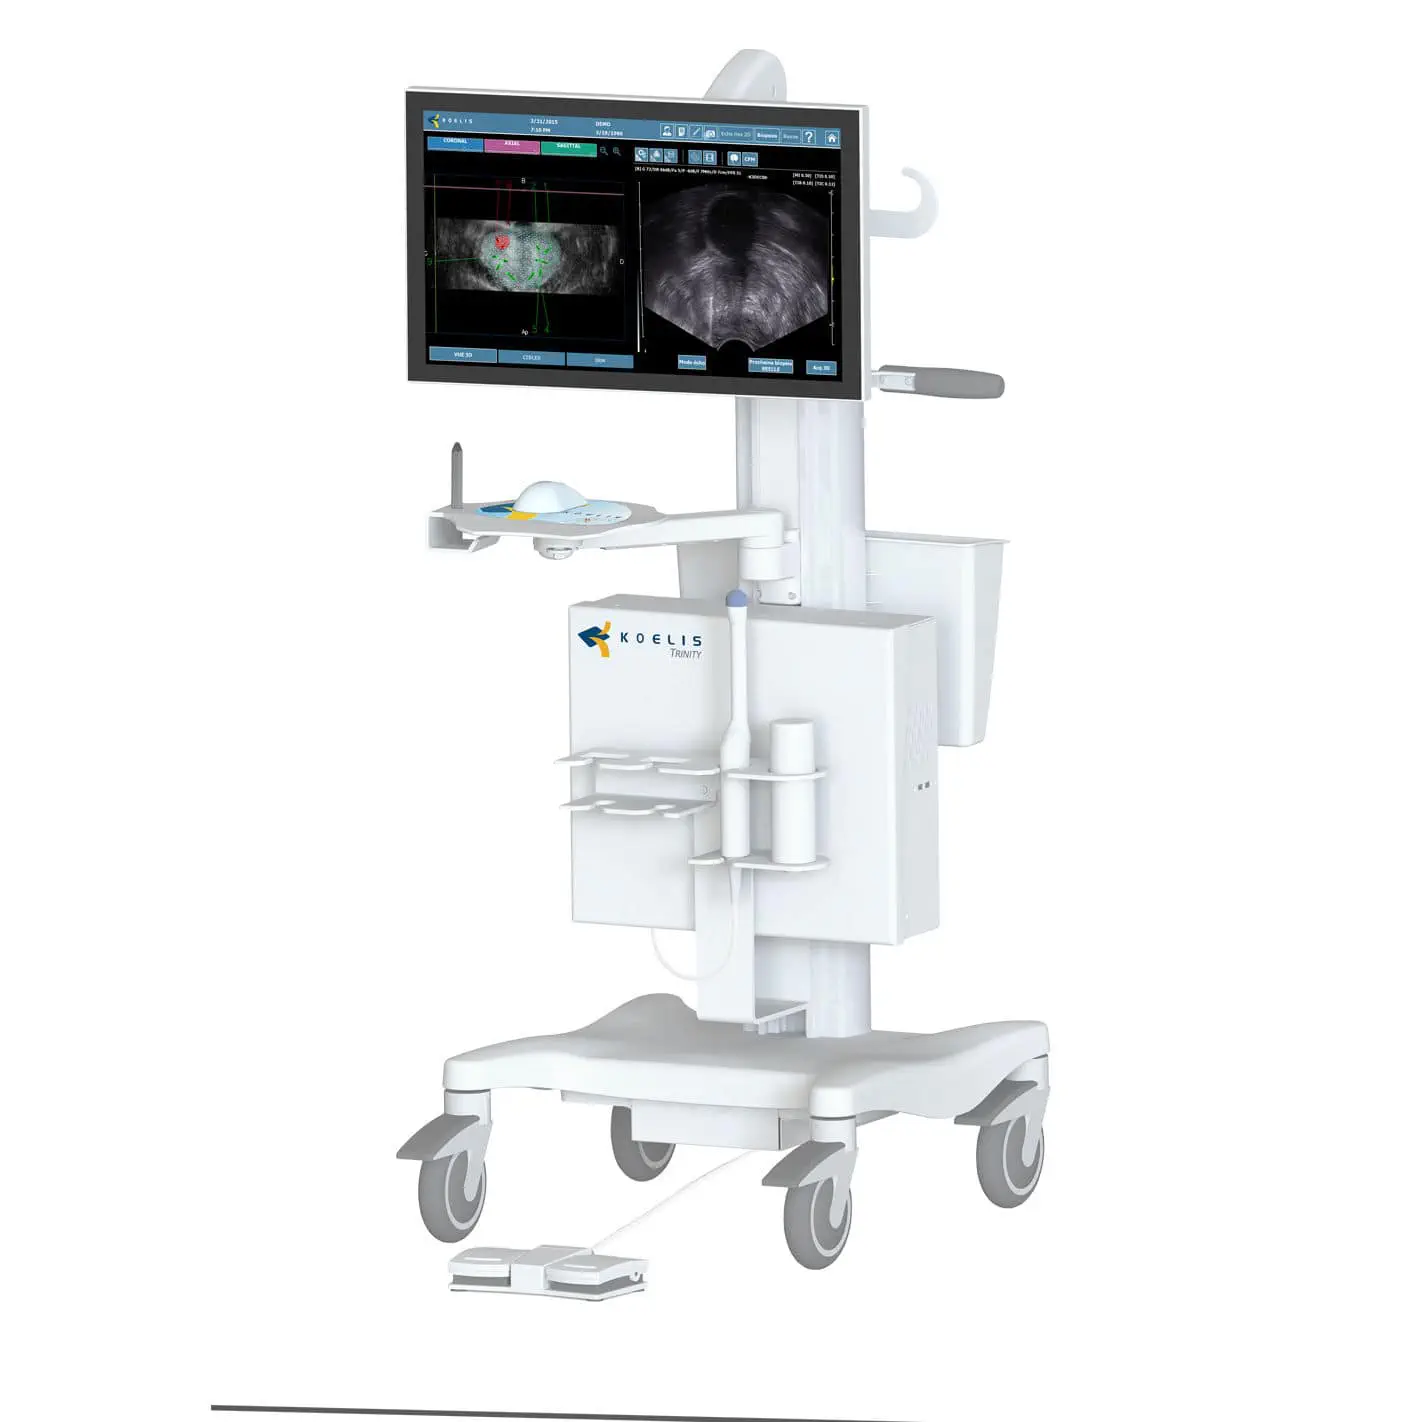 เครื่องตรวจอวัยวะภายในด้วยคลื่นเสียงความคมชัดสูง  On-platform ultrasound system Trinity®  Koelis